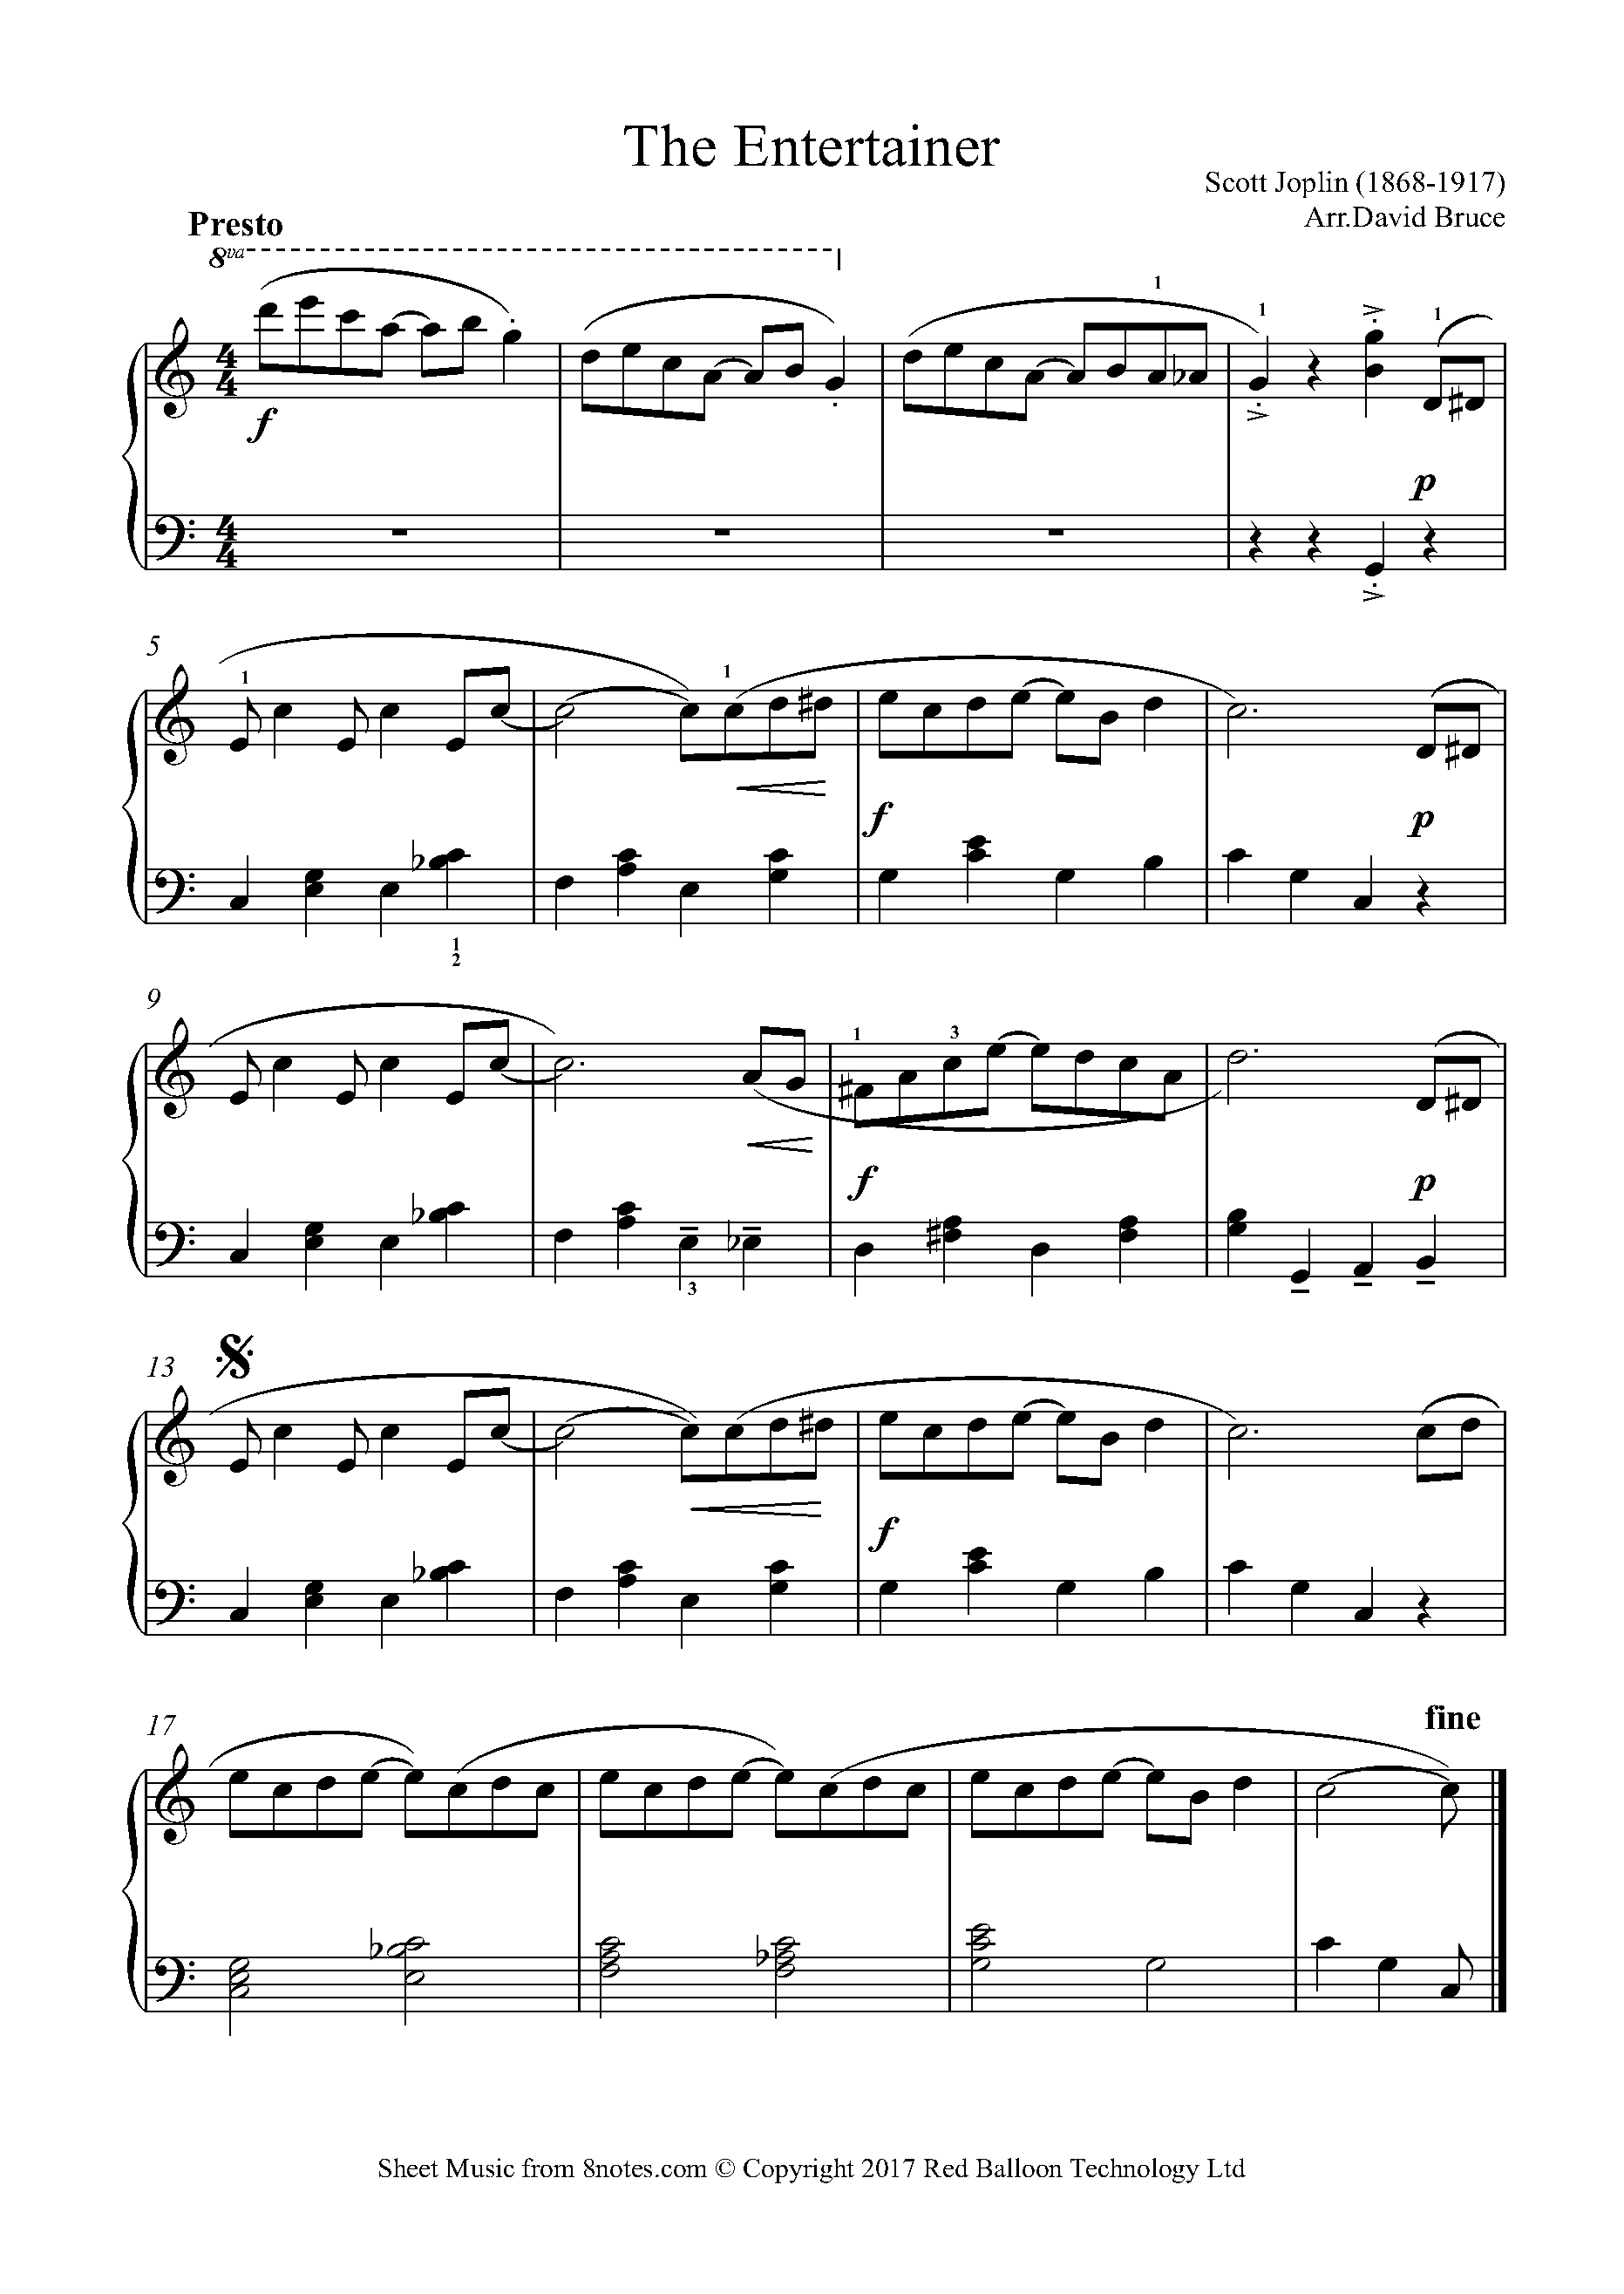 Arrepentimiento Islas Faroe sabiduría Scott Joplin - The Entertainer Sheet music for Piano - 8notes.com